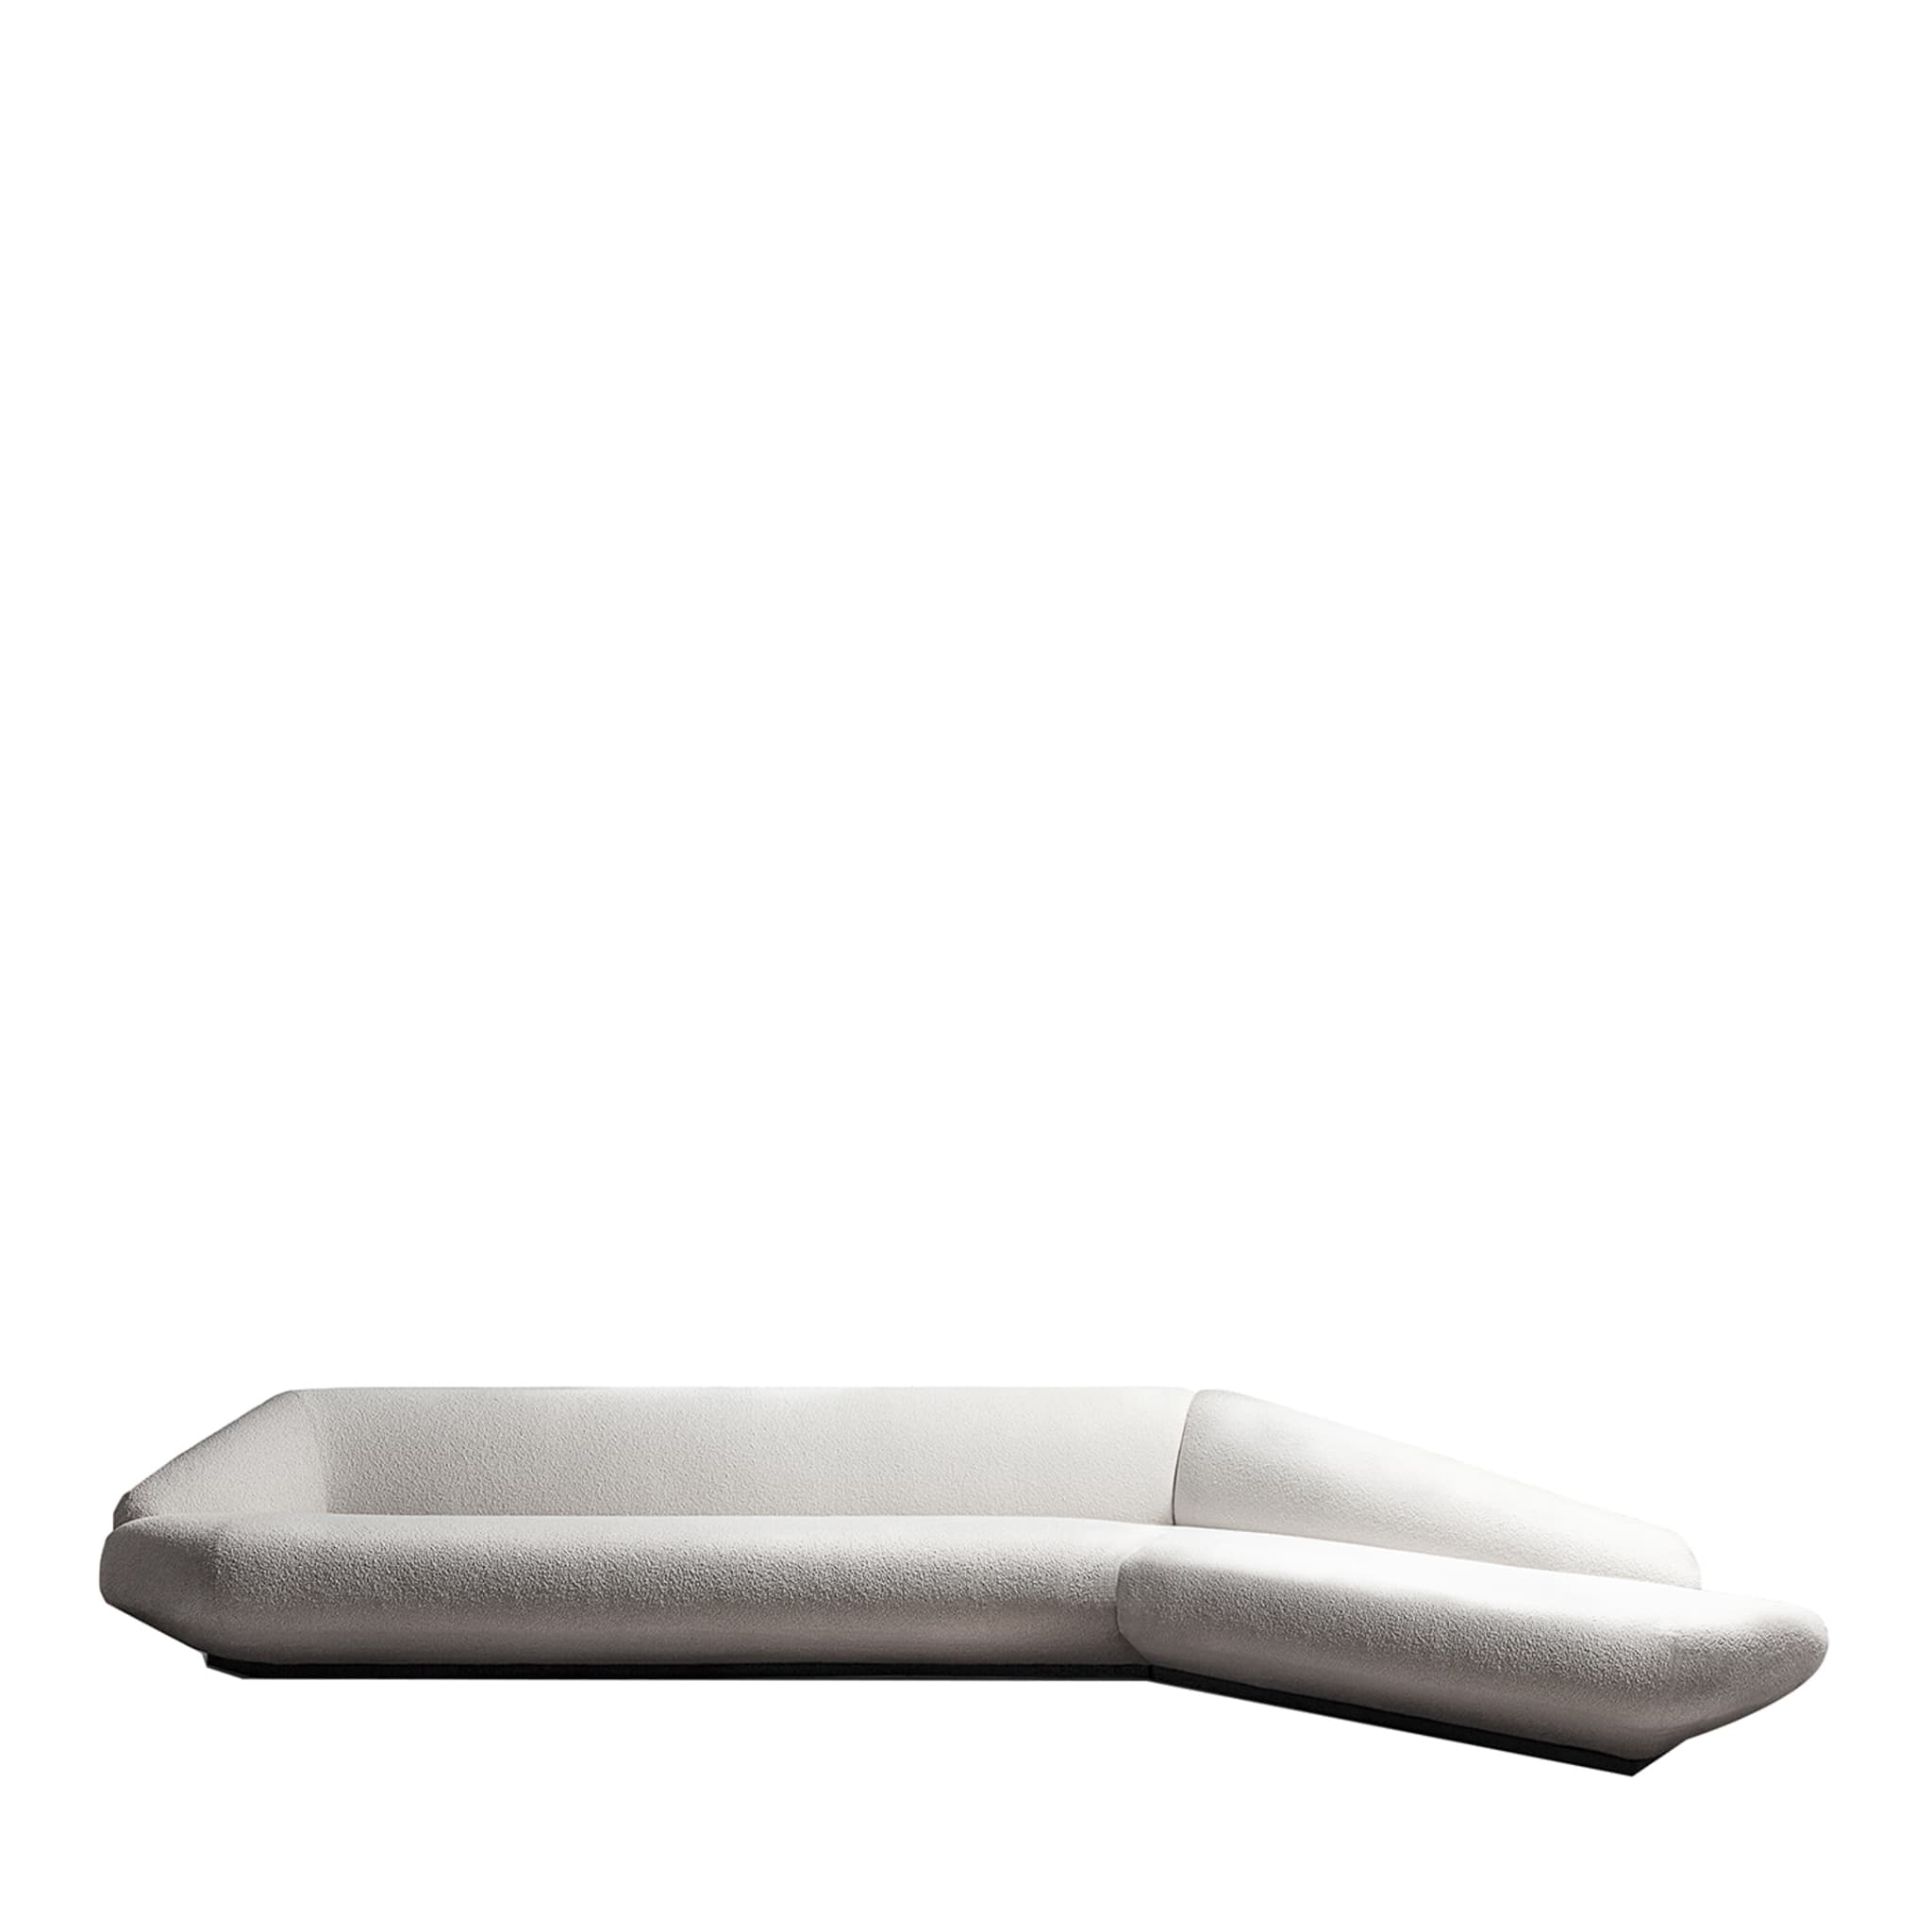 Bolid 370 Eckiges weißes Sofa von Gianluigi Landoni - Hauptansicht